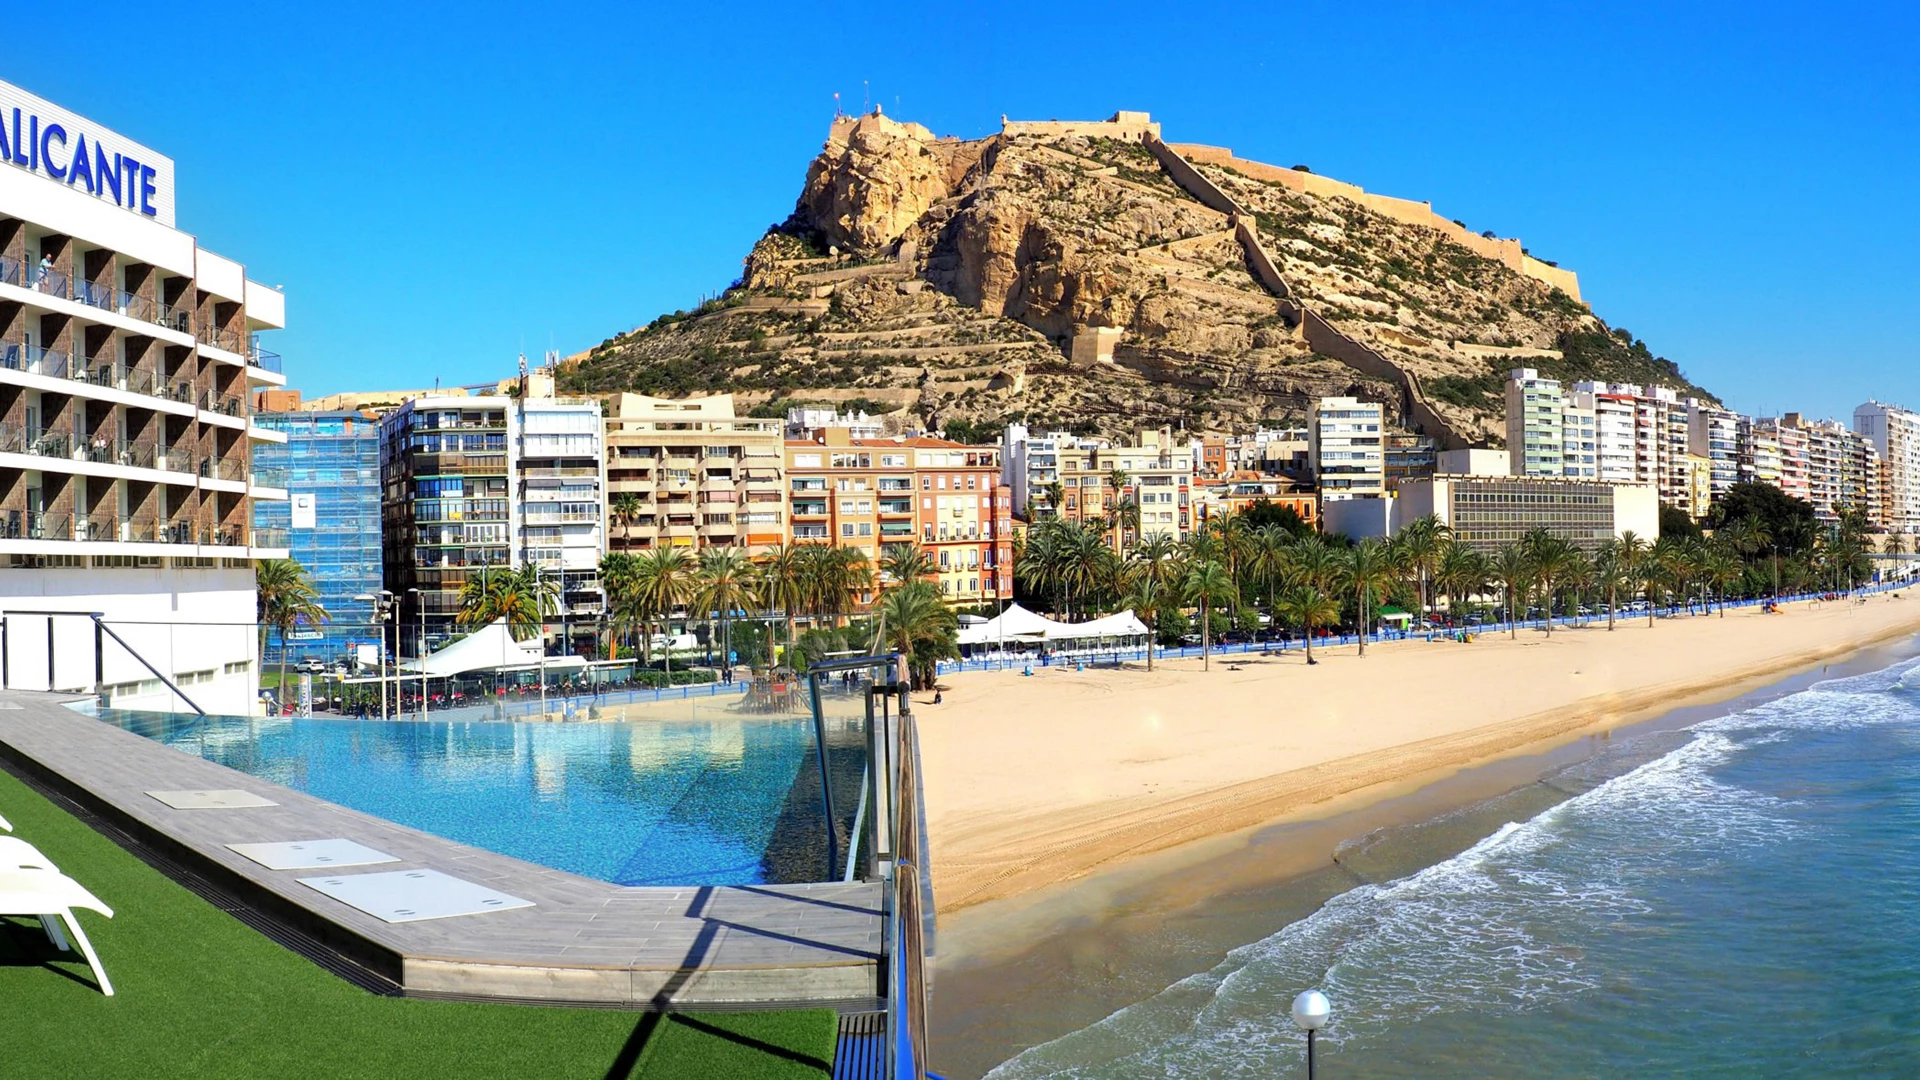 Premium-huoneistot Alicantessa